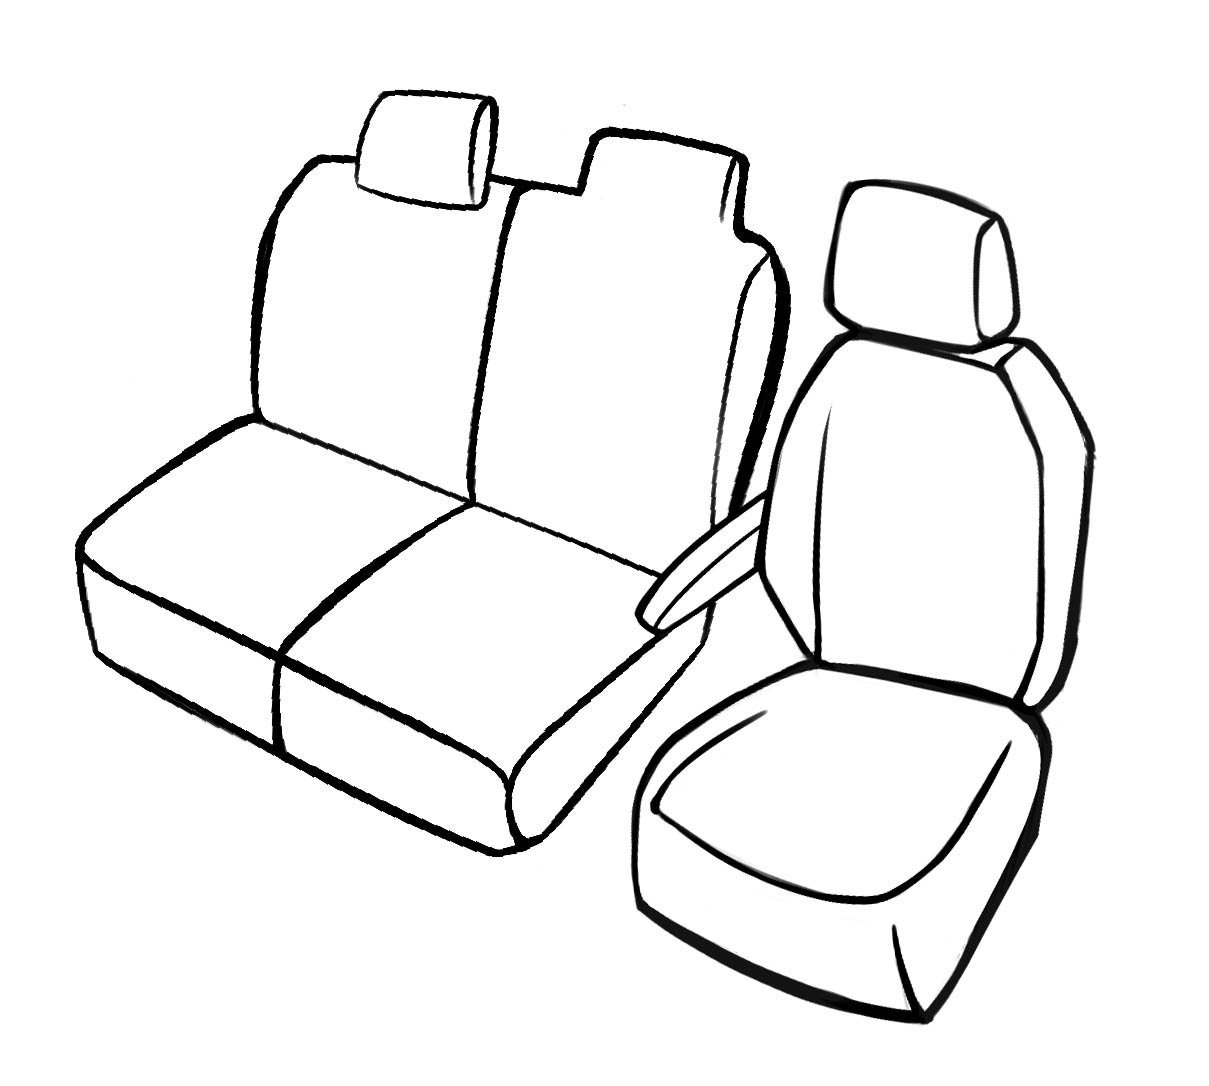 Premium auto stoelhoezen compatibel met Renault Master enkele zetel voor en dubbele bank opklapbaar in kunstleder vanaf bouwjaar 2010 - Vandaag